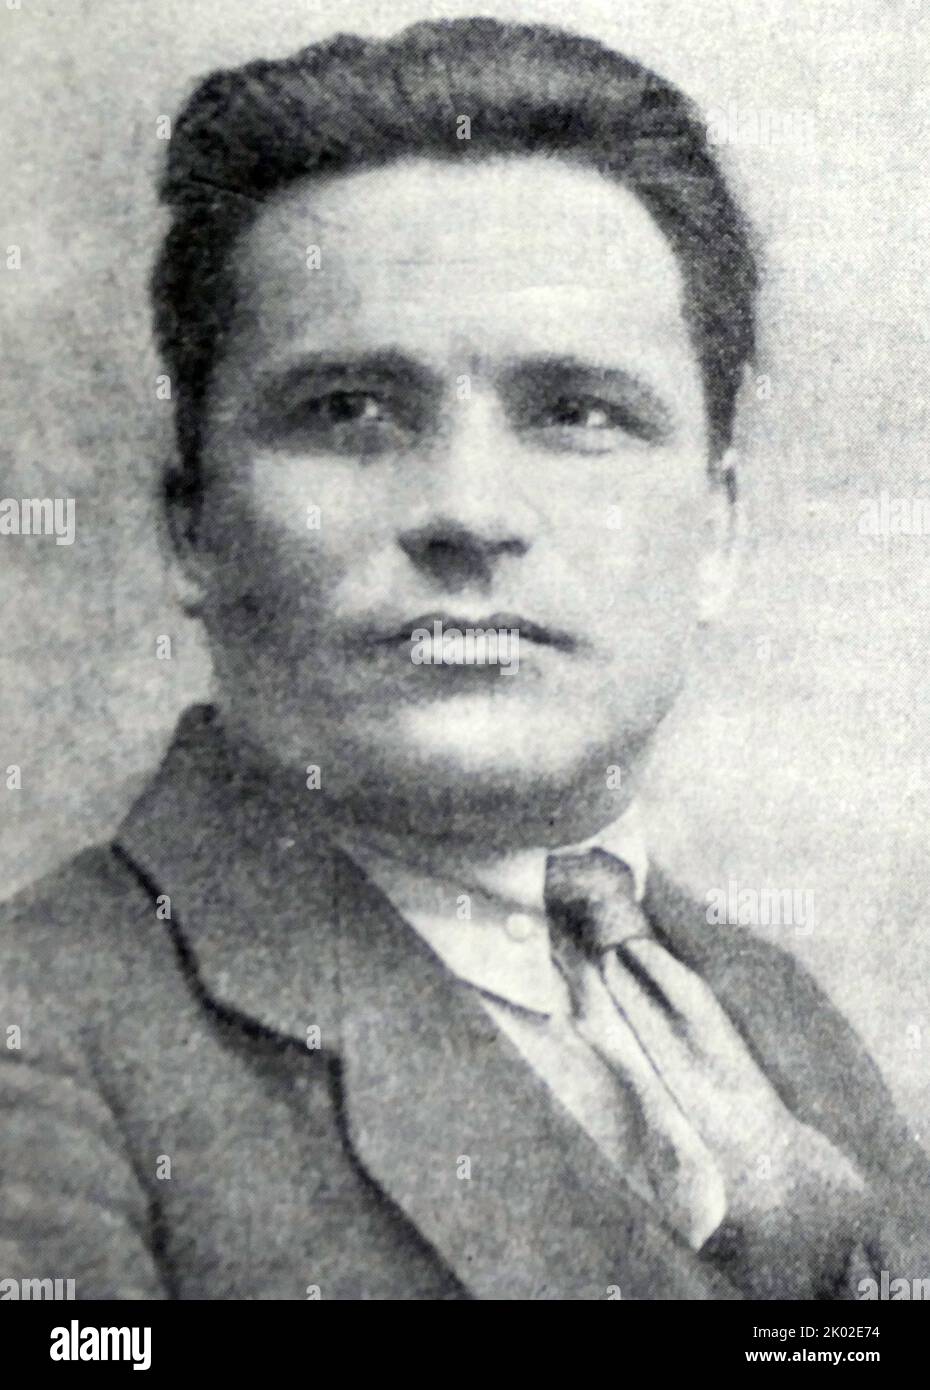 Sergei Mironovich Kirov (1886 - 1934); politicien soviétique et révolutionnaire bolchevique dont l'assassinat a été utilisé comme prétexte pour lancer la première Grande Purge. Banque D'Images